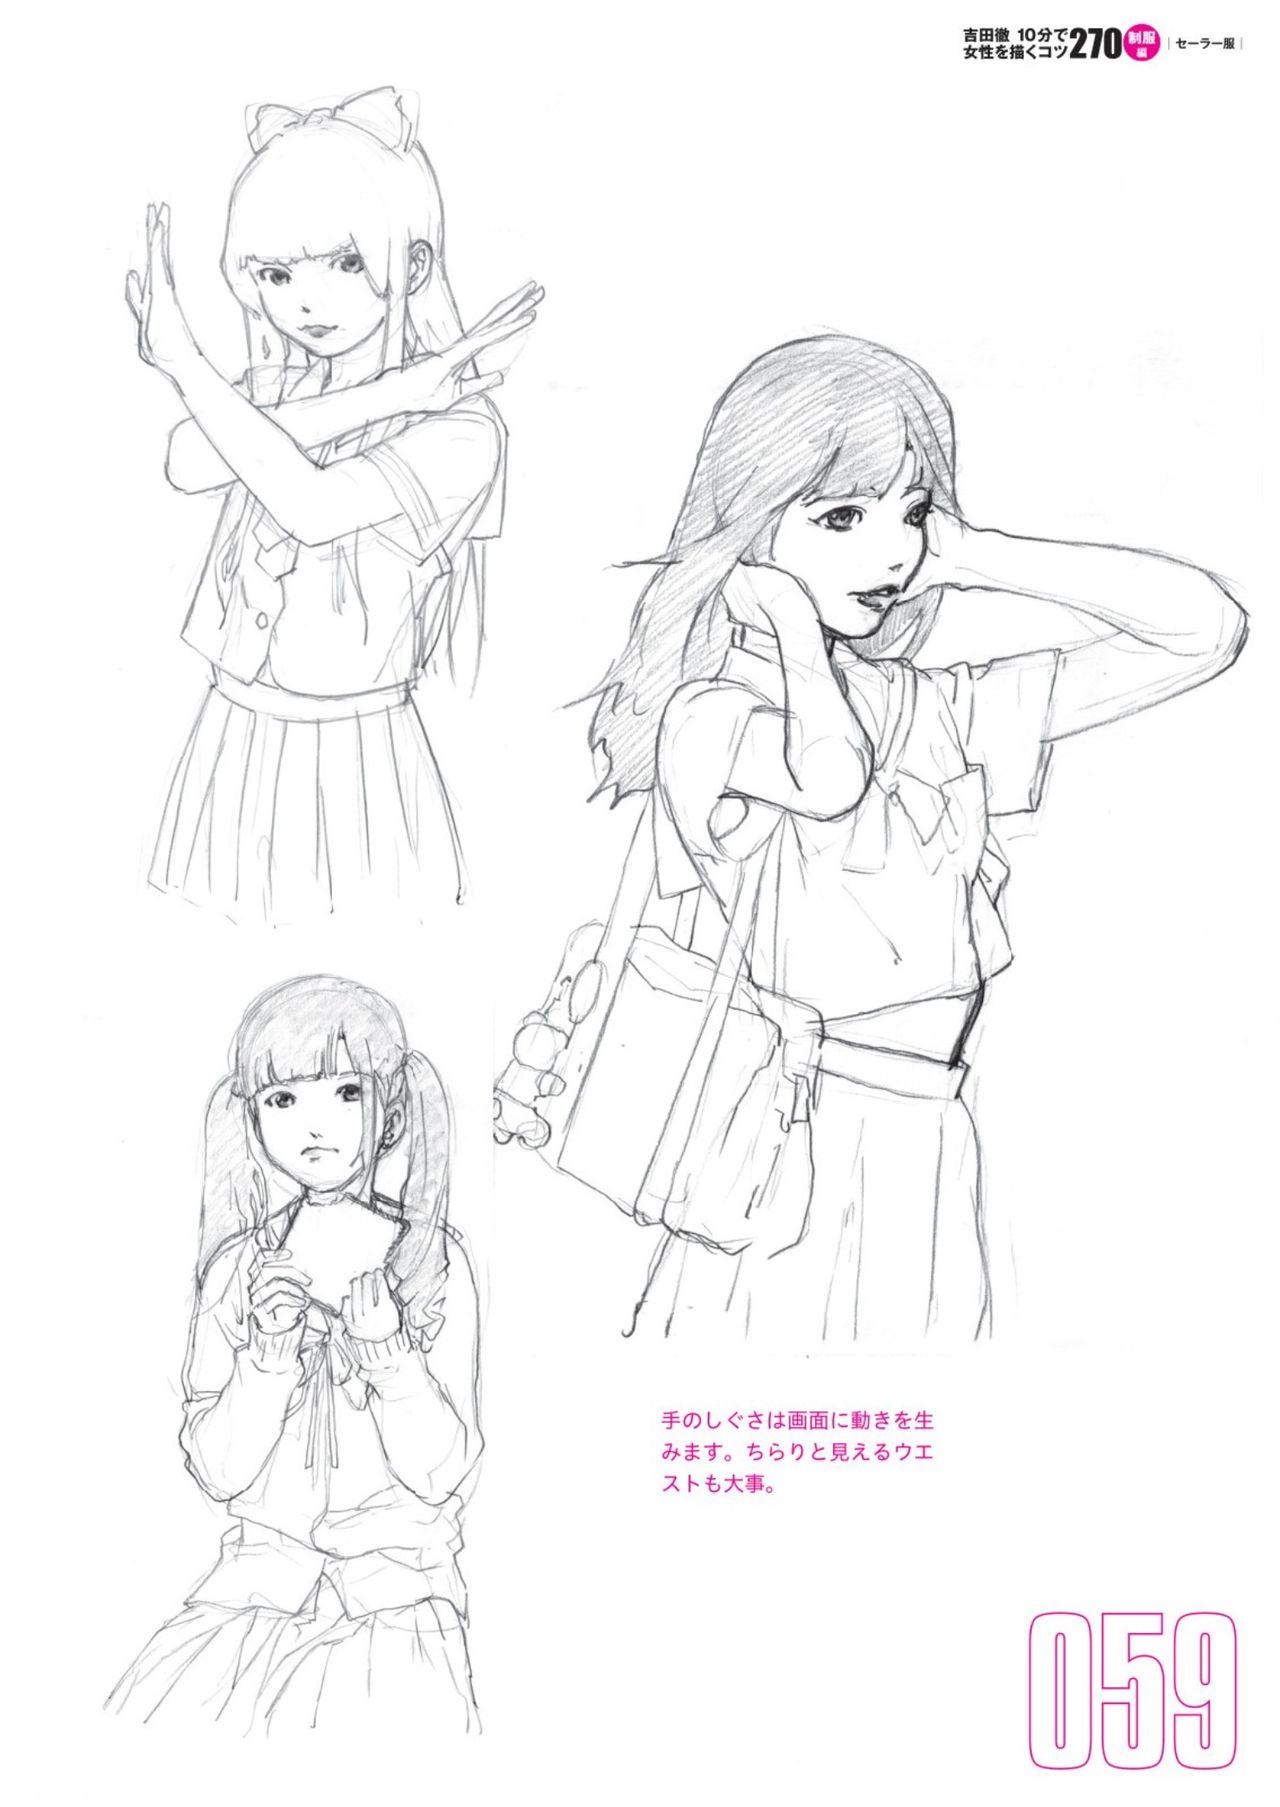 Toru Yoshida Tips for drawing women in 10 minutes 270 Uniforms 60